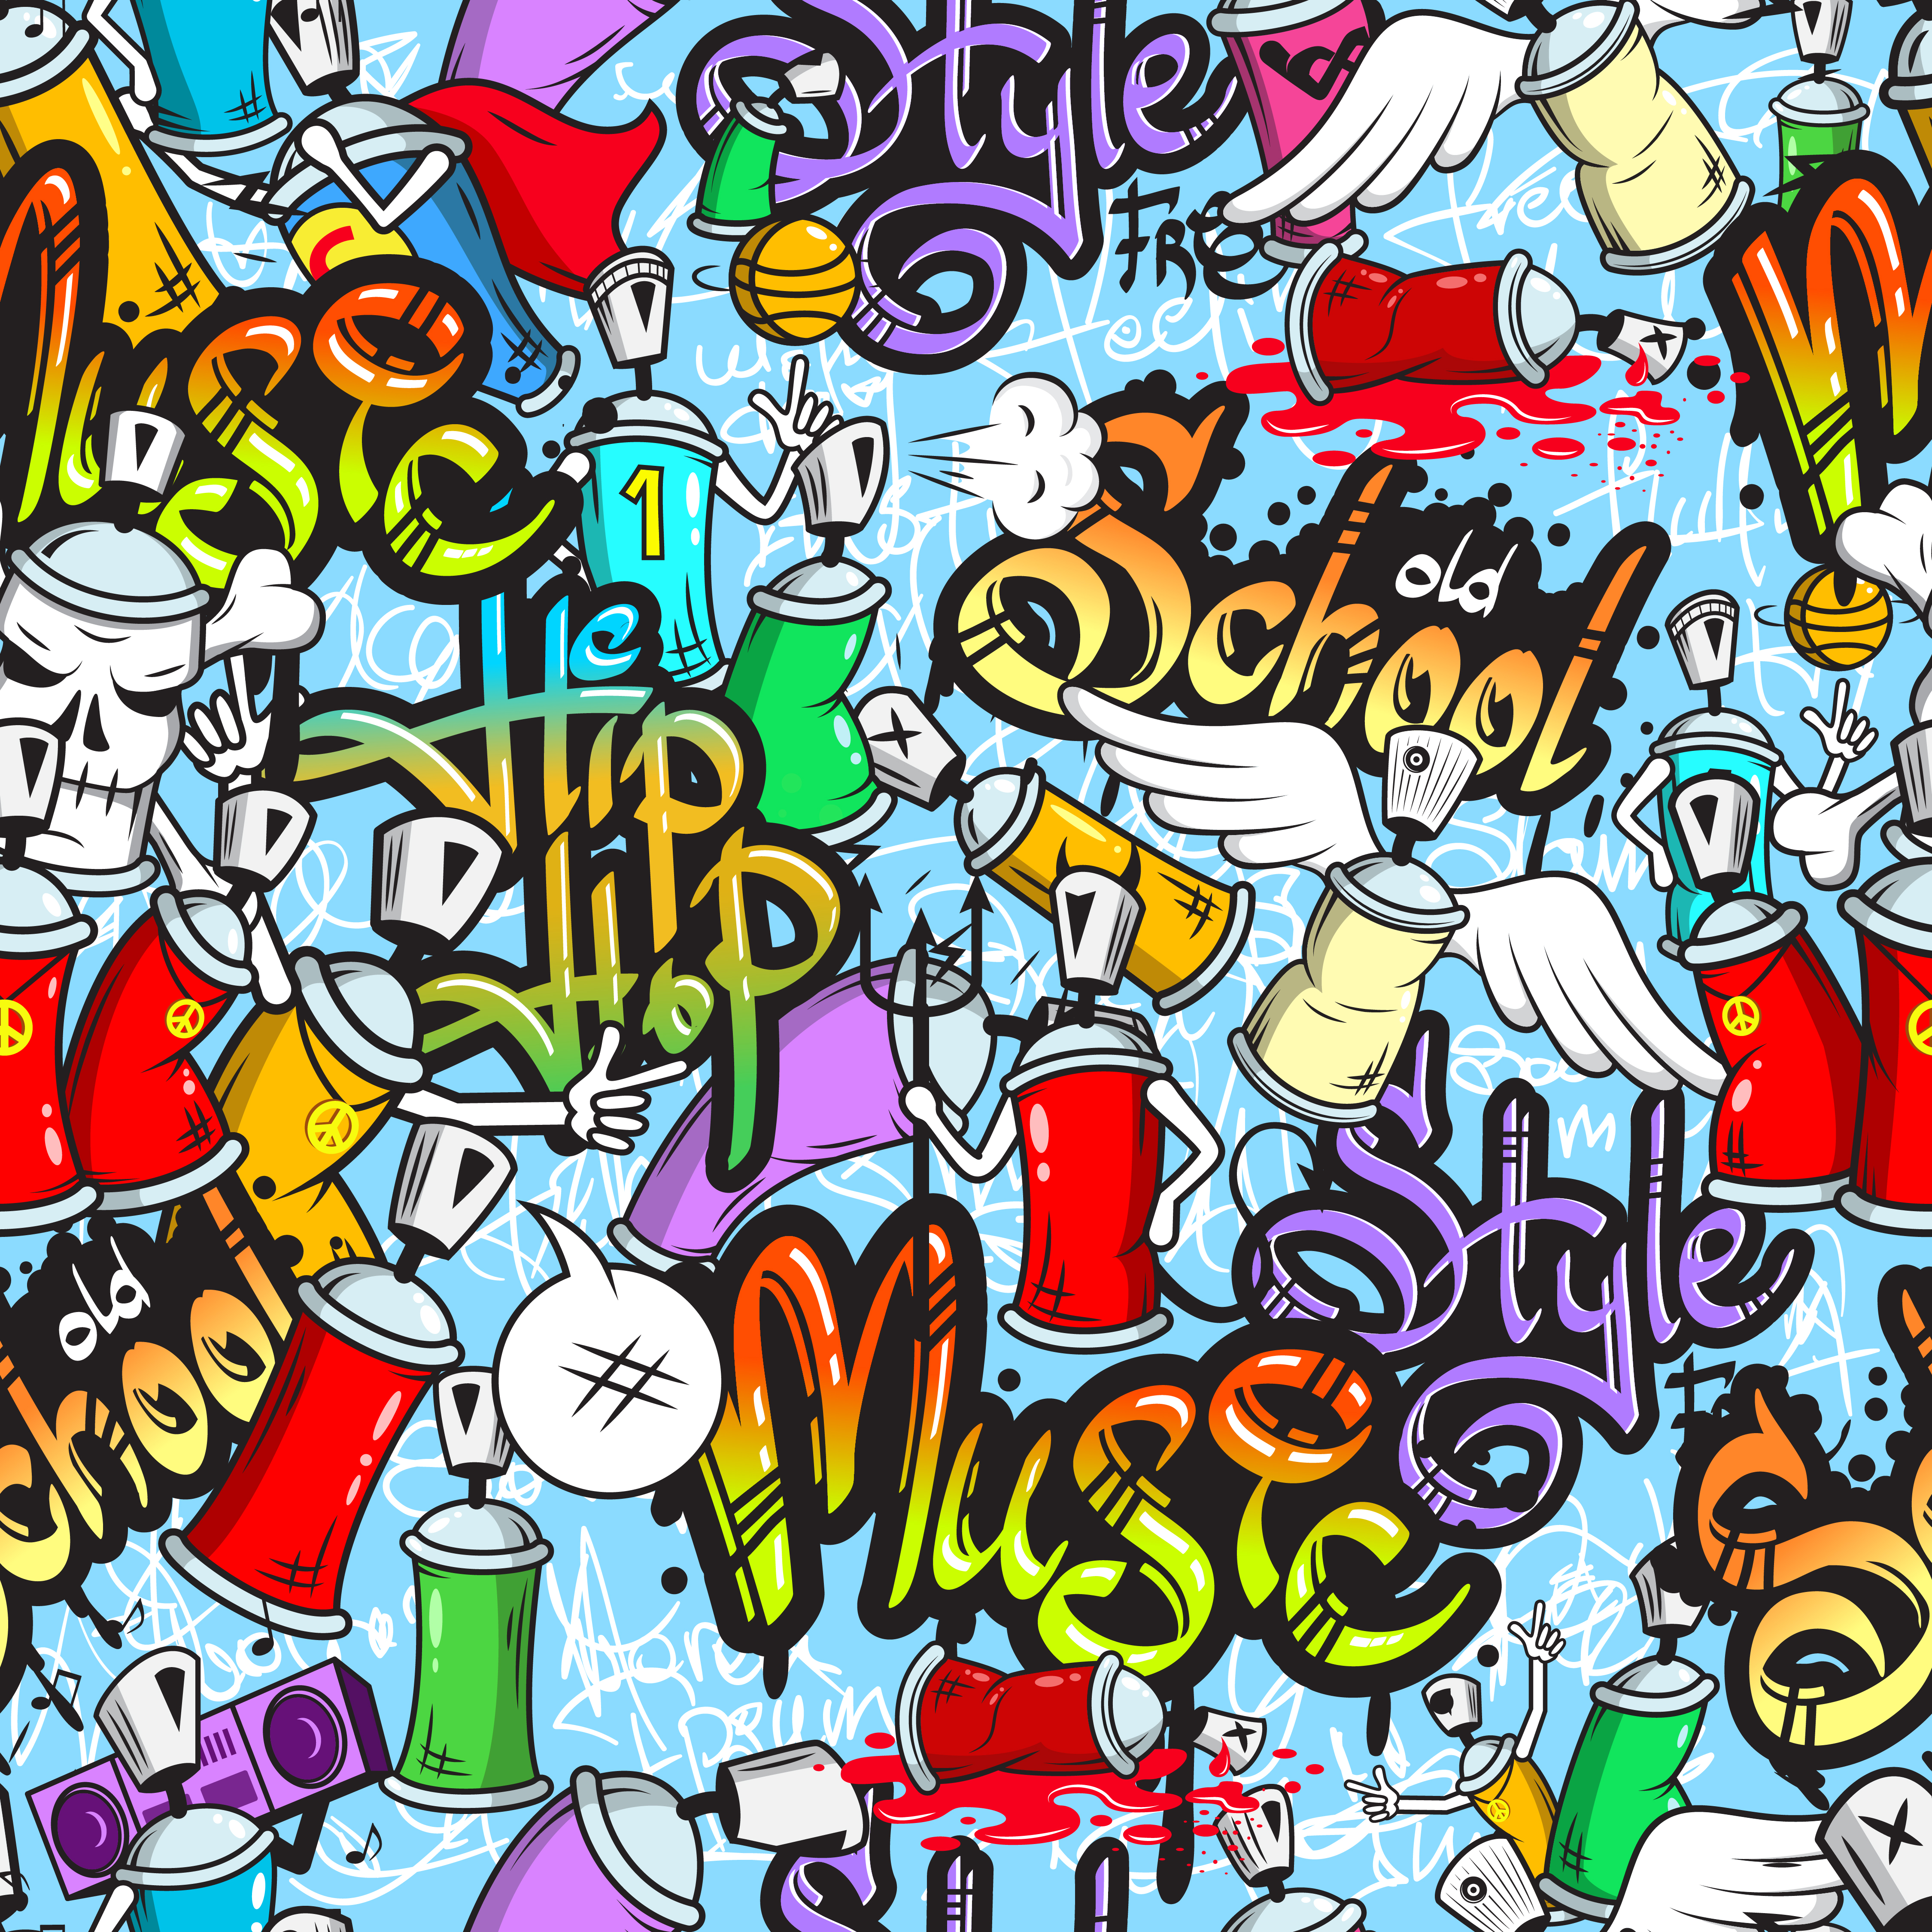 Graffiti characters seamless pattern - Download Free ...